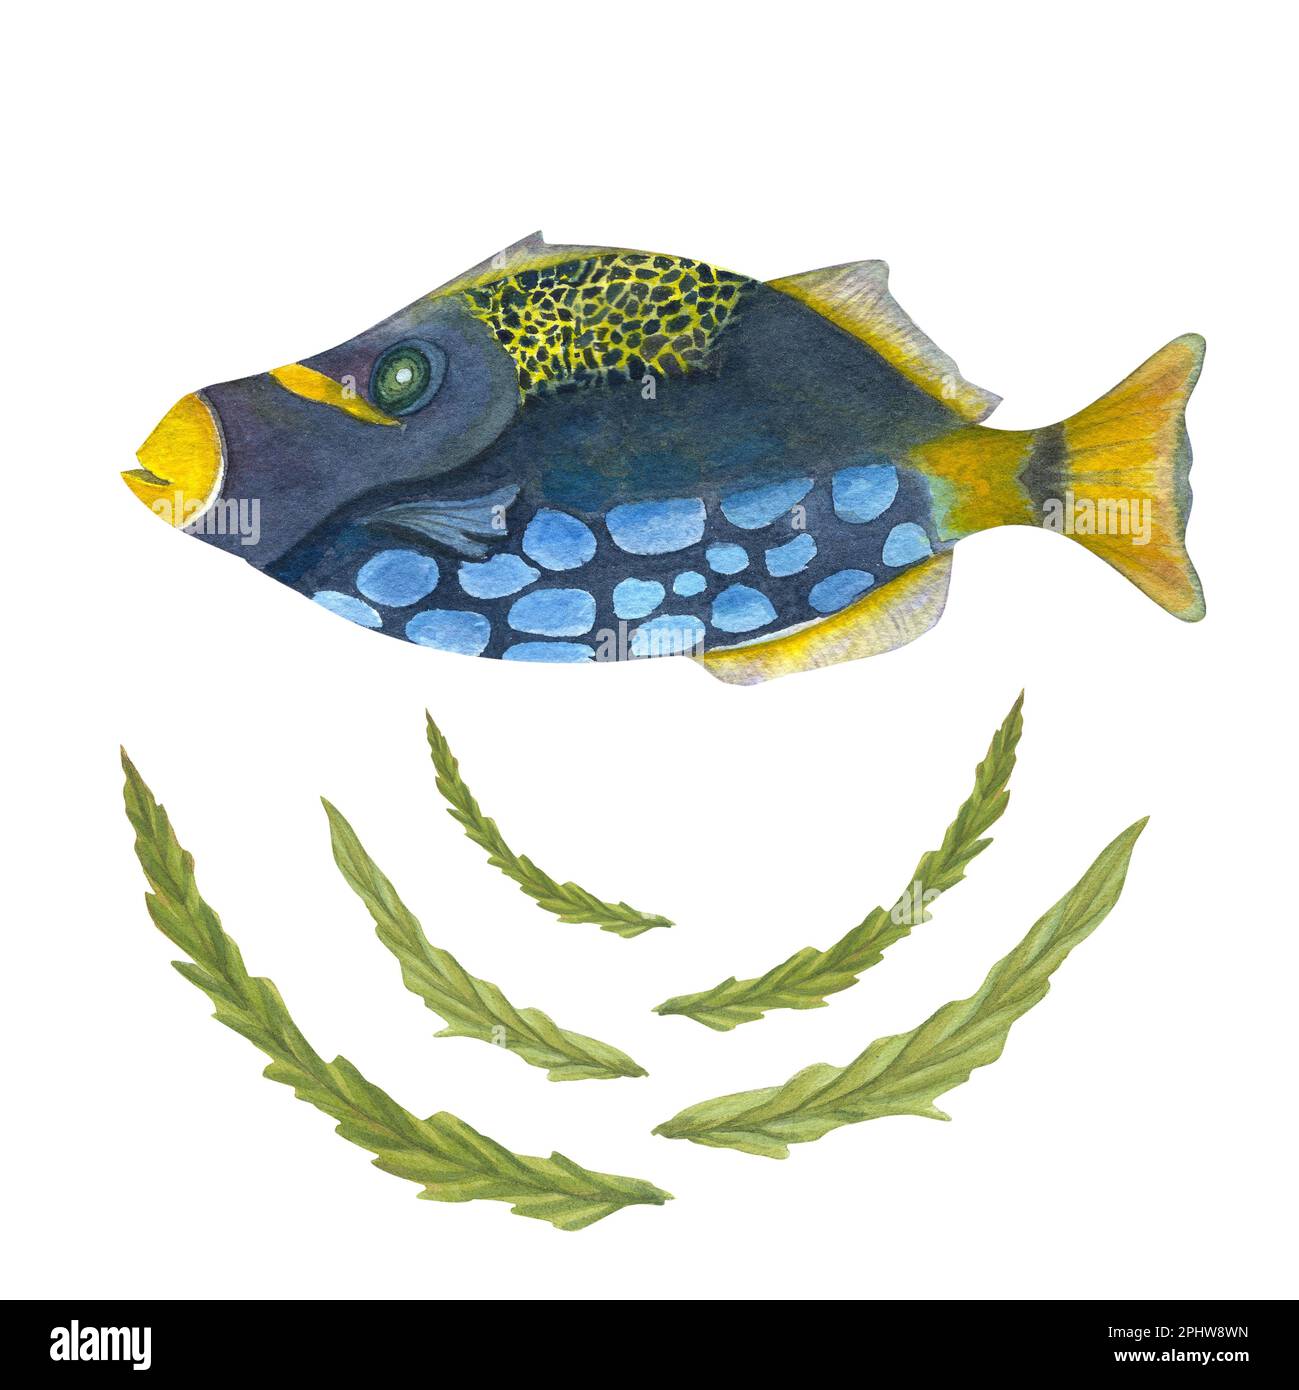 Acquerello dipinto a mano, illustrazione di pesci e alghe isolate su sfondo bianco. Può essere utilizzato per tappezzeria, stampa, tessuti per bambini, vivaio Foto Stock